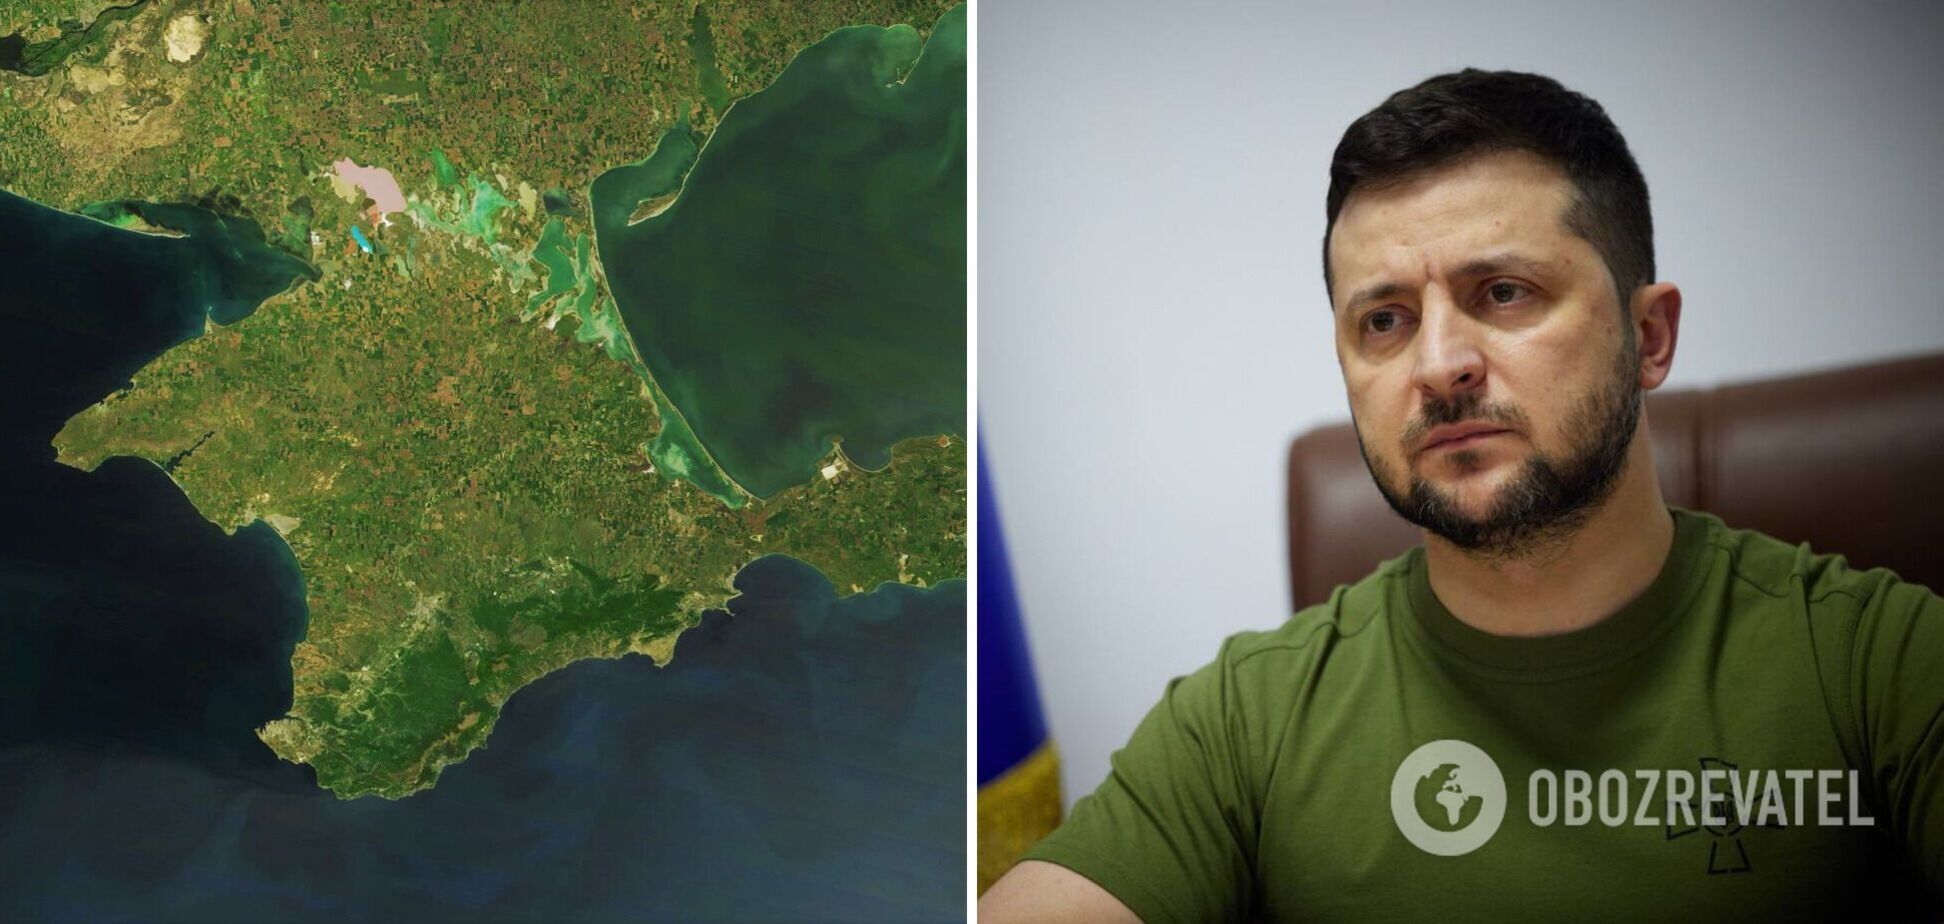 Слабая международная реакция в 2014 году стала предпосылкой того, что Крым сейчас является плацдармом для ударов по Украине, – Зеленский